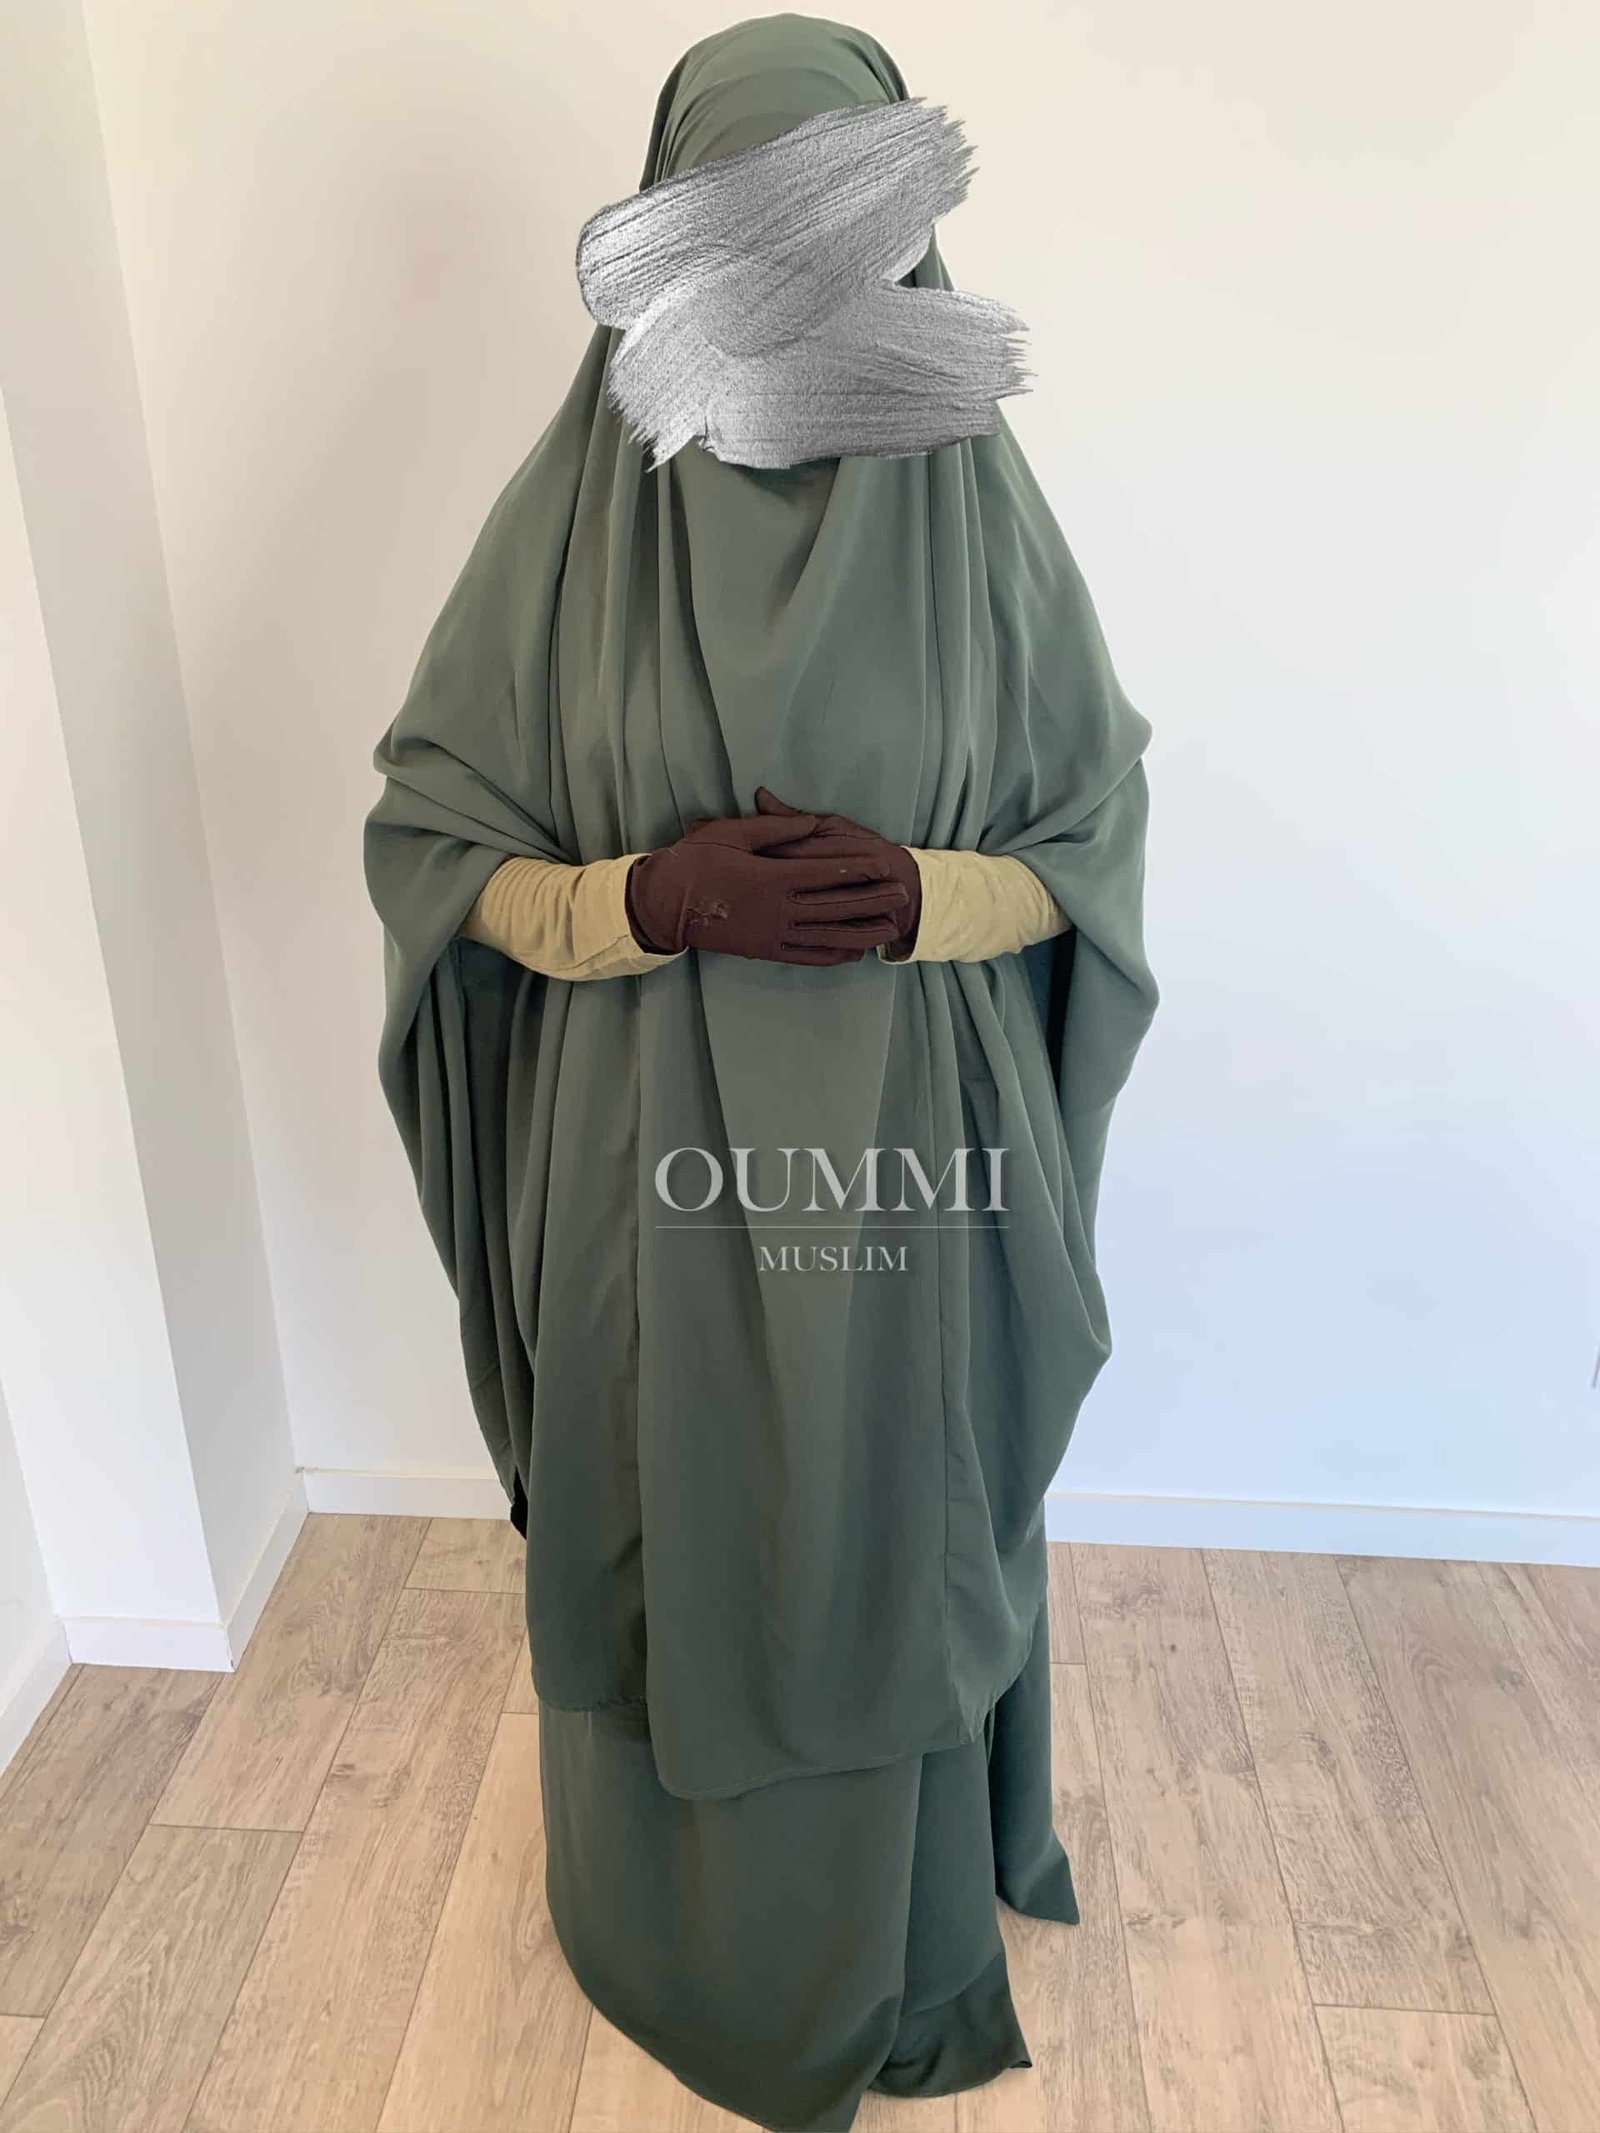 Jilbab 2 pièce pas cher pour femme musulmane conçu dans un magnifique tissu whool peach, c'est un jilbab à petit prix que nous vous proposons avec un large choix de coloris. Idéal pour une femme voilée portant le jilbab ou le niqab. Ce jilbab se décline en modèle jupe ou sarouel, pour femme ou petite fille.